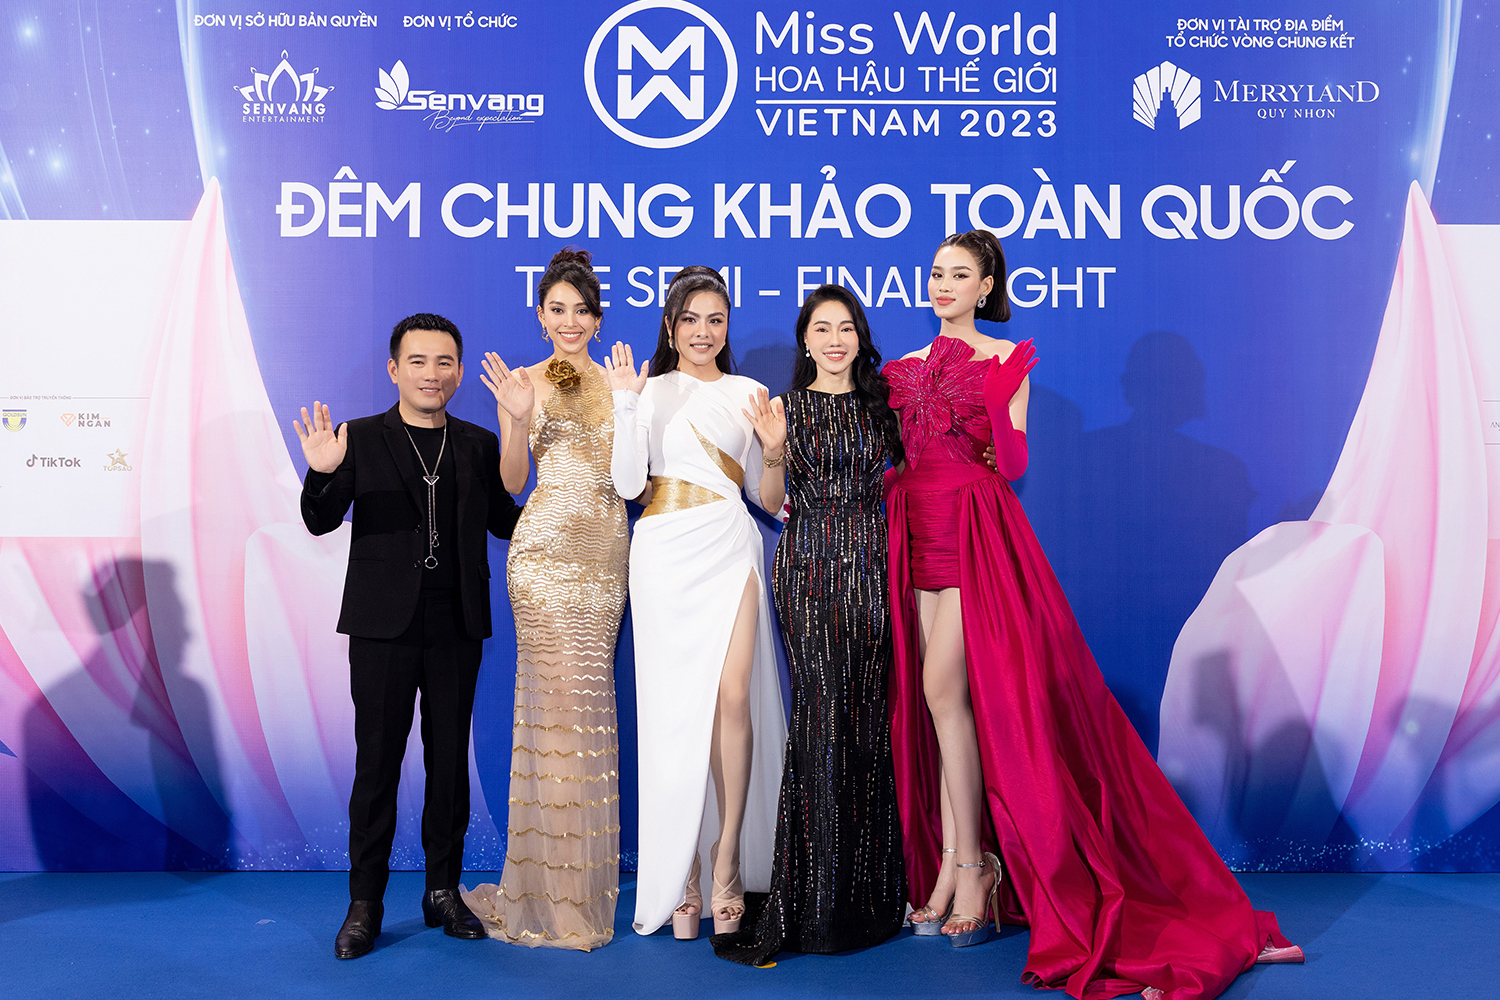 Harper's Bazaar_Thảm đỏ chung khảo Miss World Vietnam 2023_09